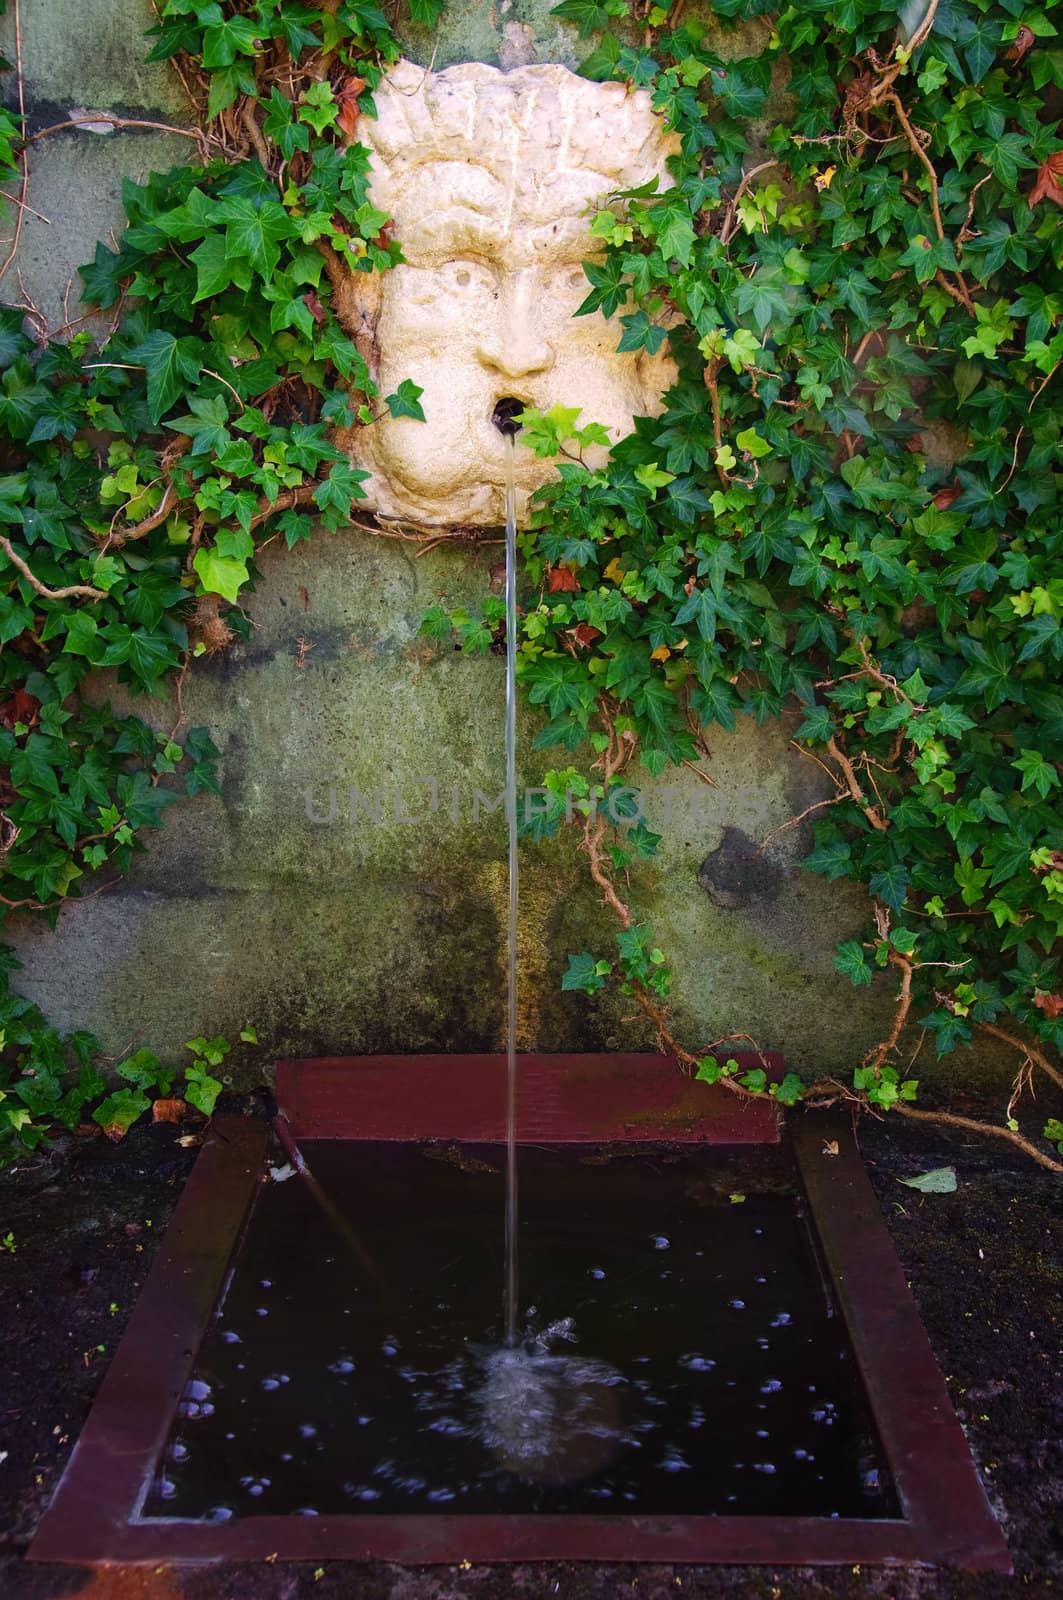 A garden fontain with face